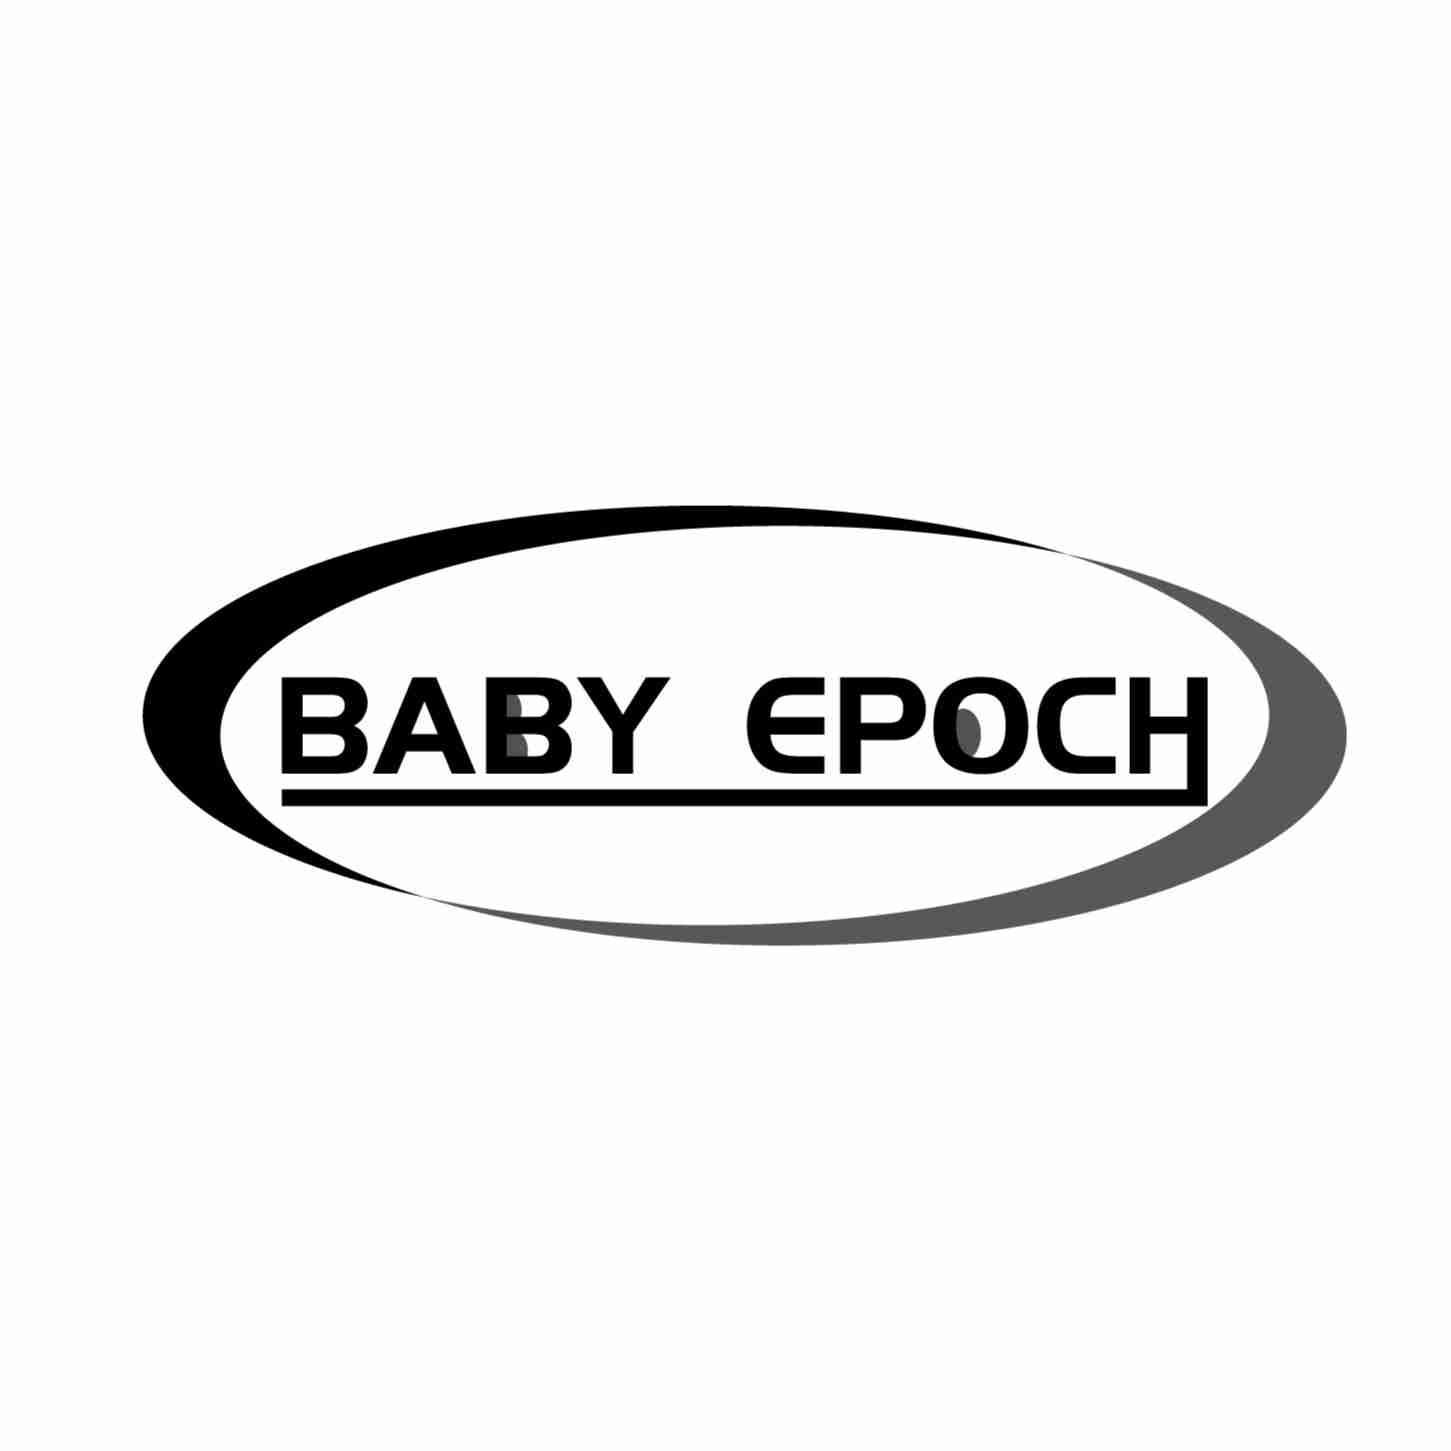 BABY EPOCH